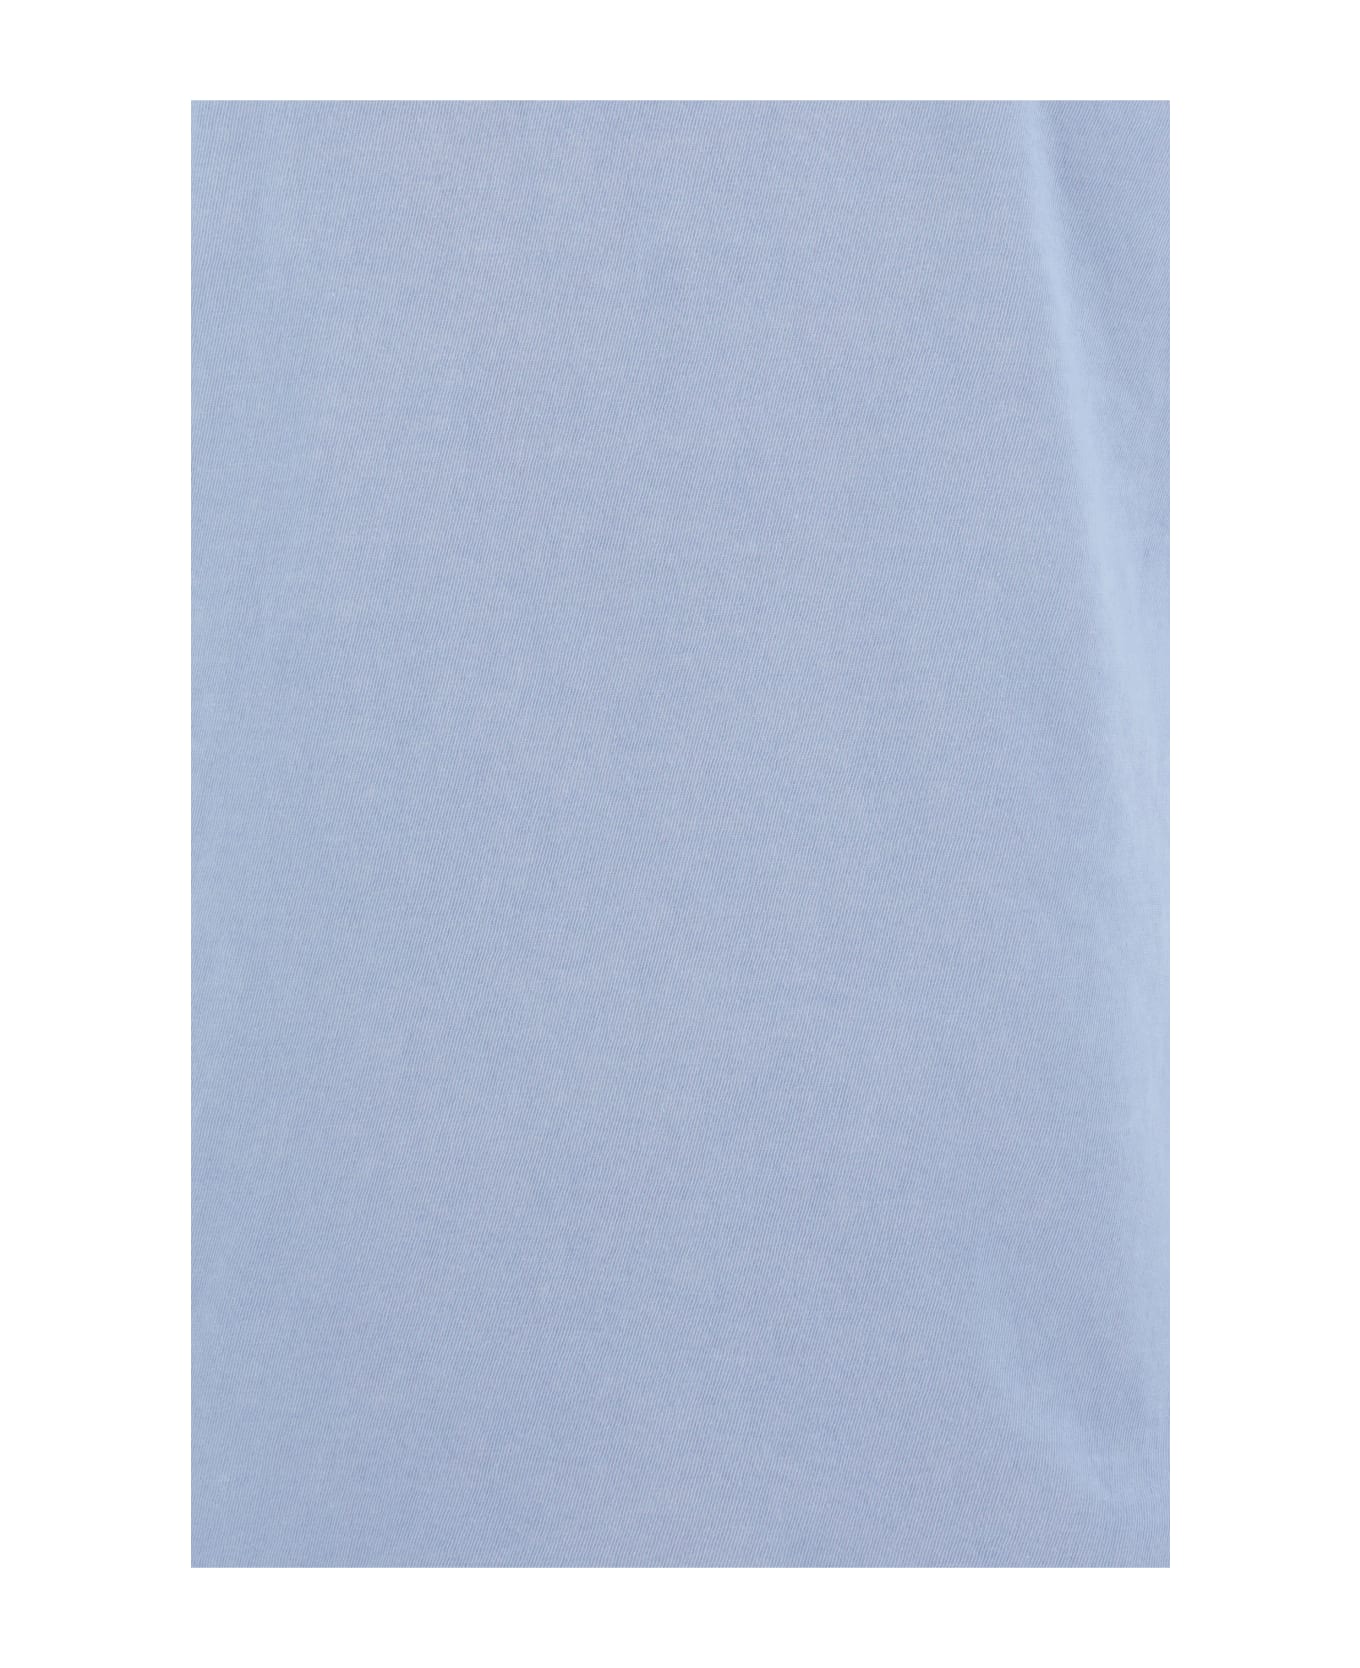 James Perse Vintage T-shirt - Open Sky Pigment